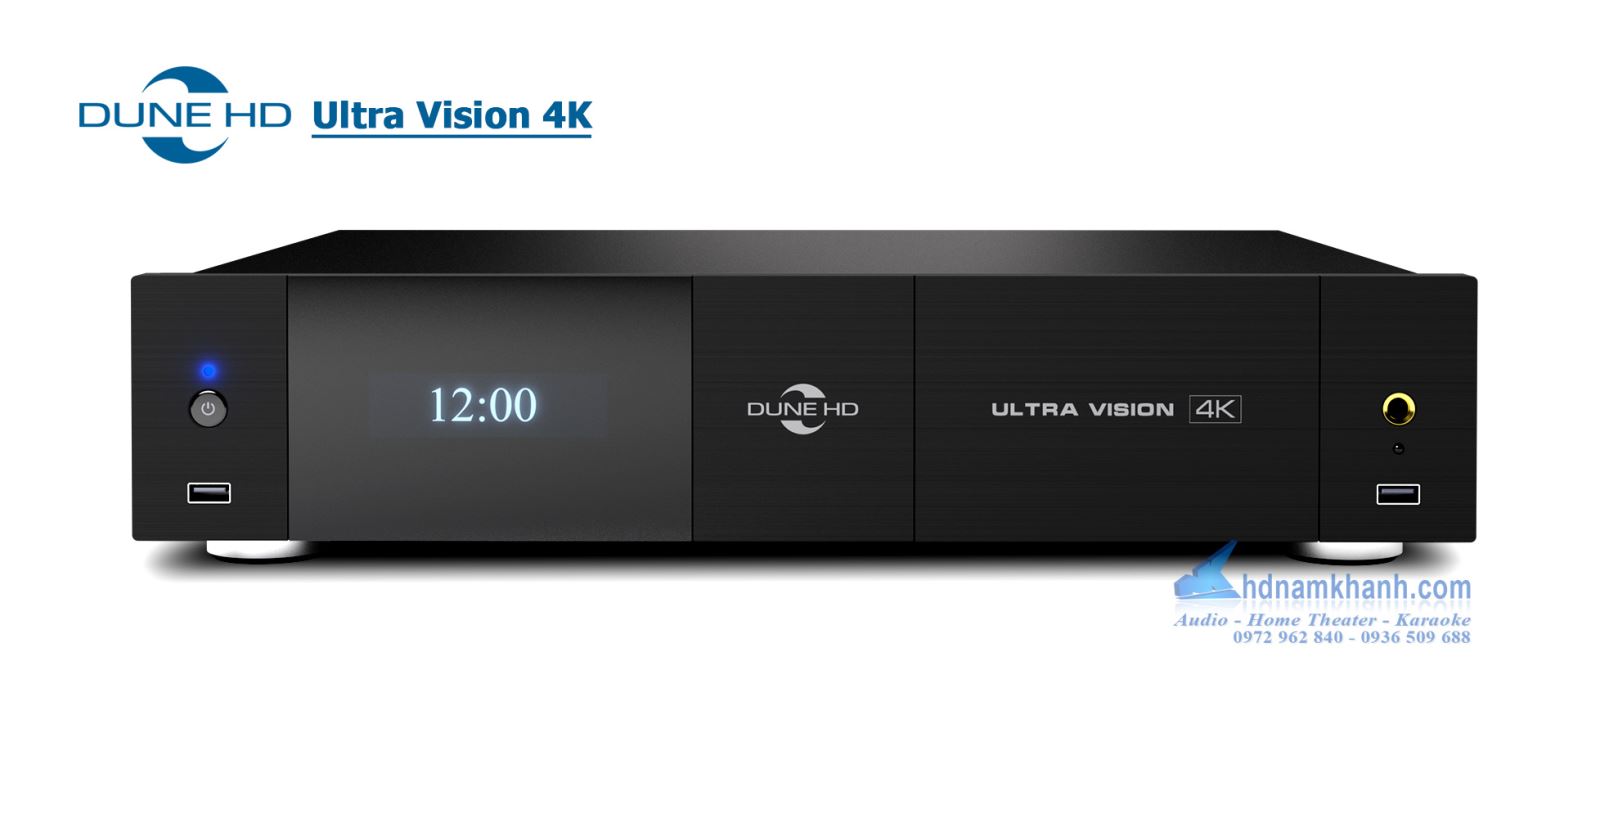 Đầu Dune HD Ultra Vision 4K - Đầu Phát Flagship High-End DAC